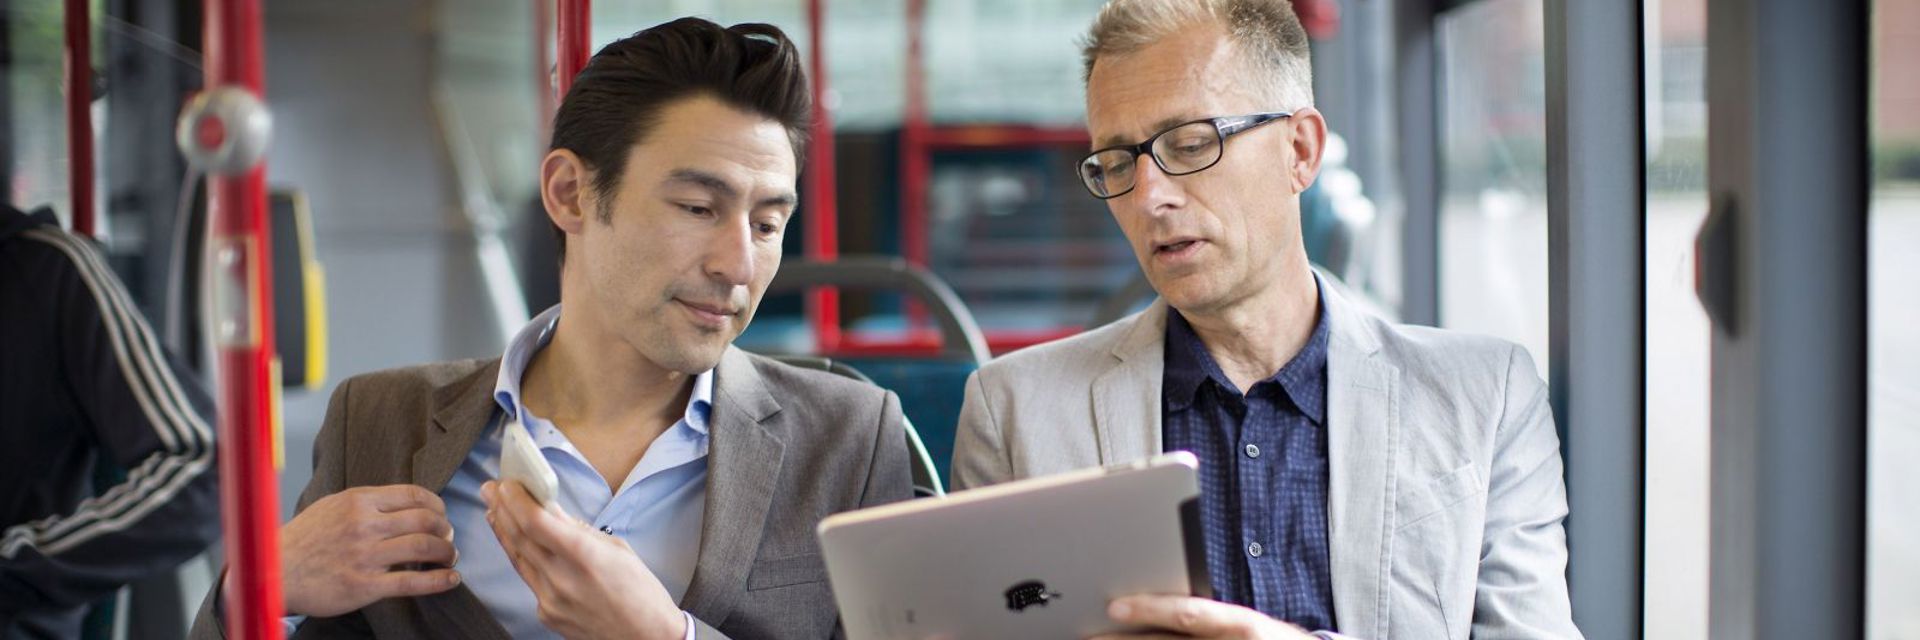 Reizigers In Bus Met Laptop En Smartphone